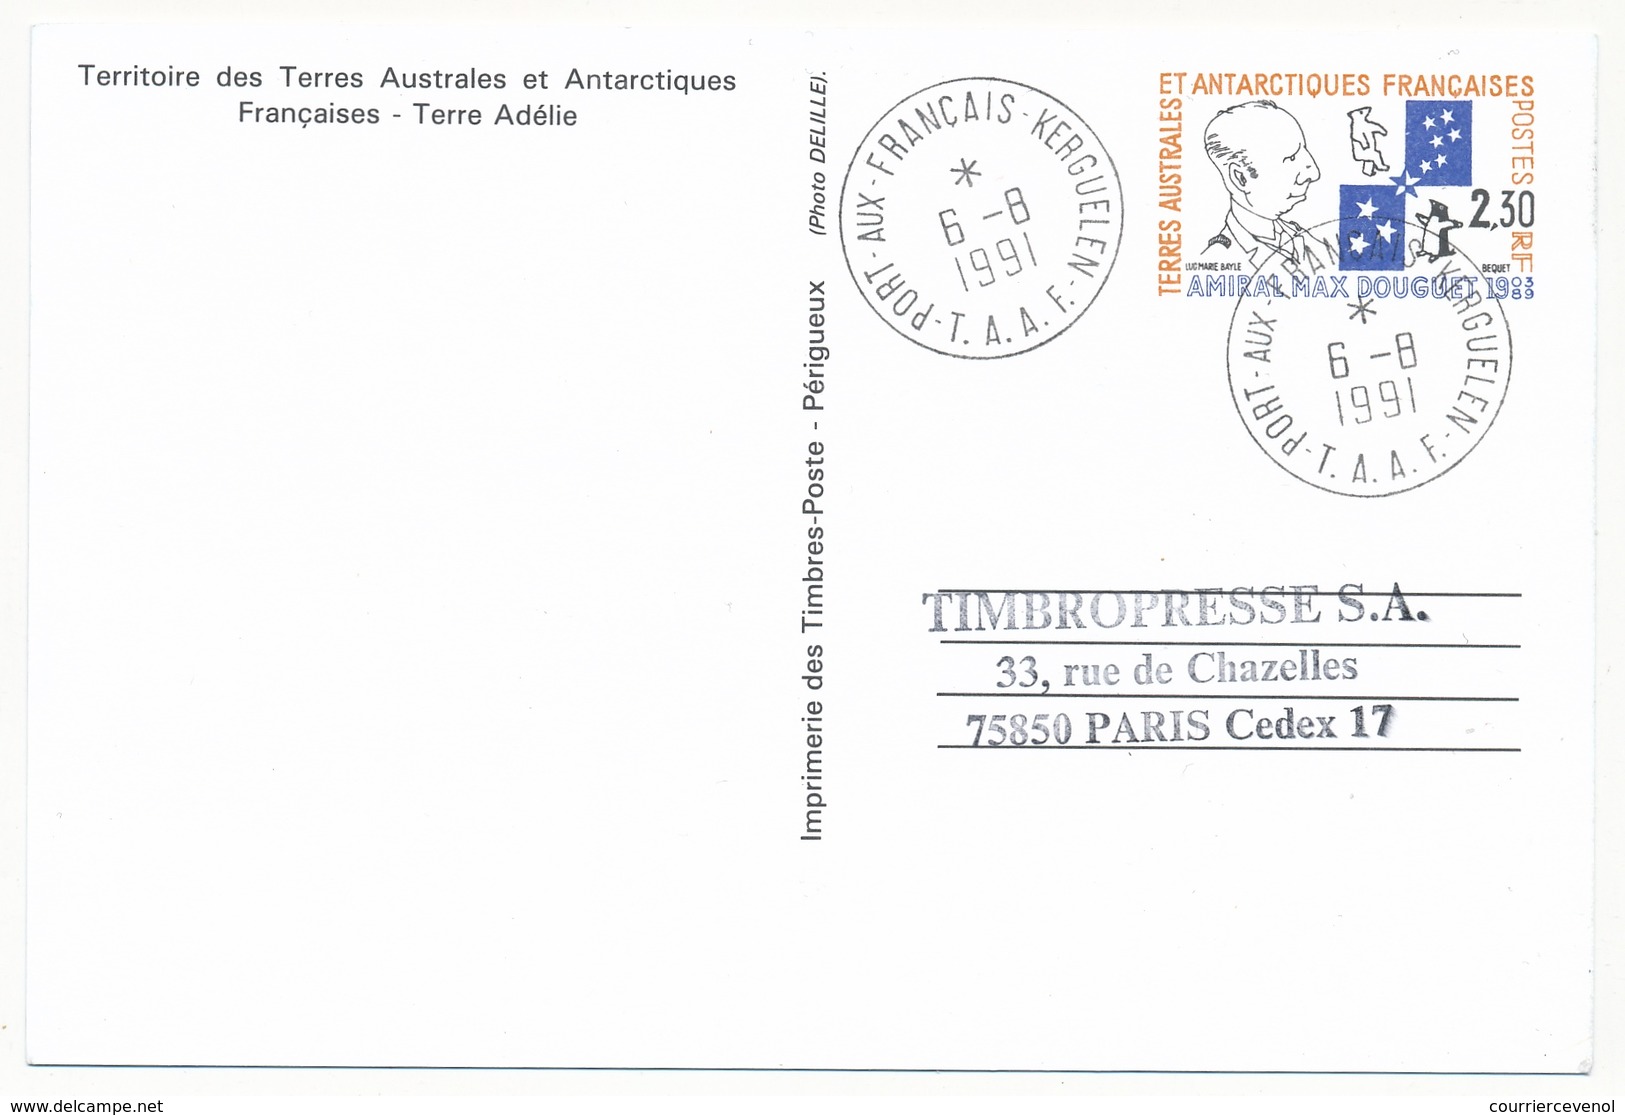 TAAF - 5 X Entier Postal Amiral Max Douguet - Obli St Martin, Dumont D'Urville, Alfred Faure, Port Aux Français Et Neuf - Entiers Postaux